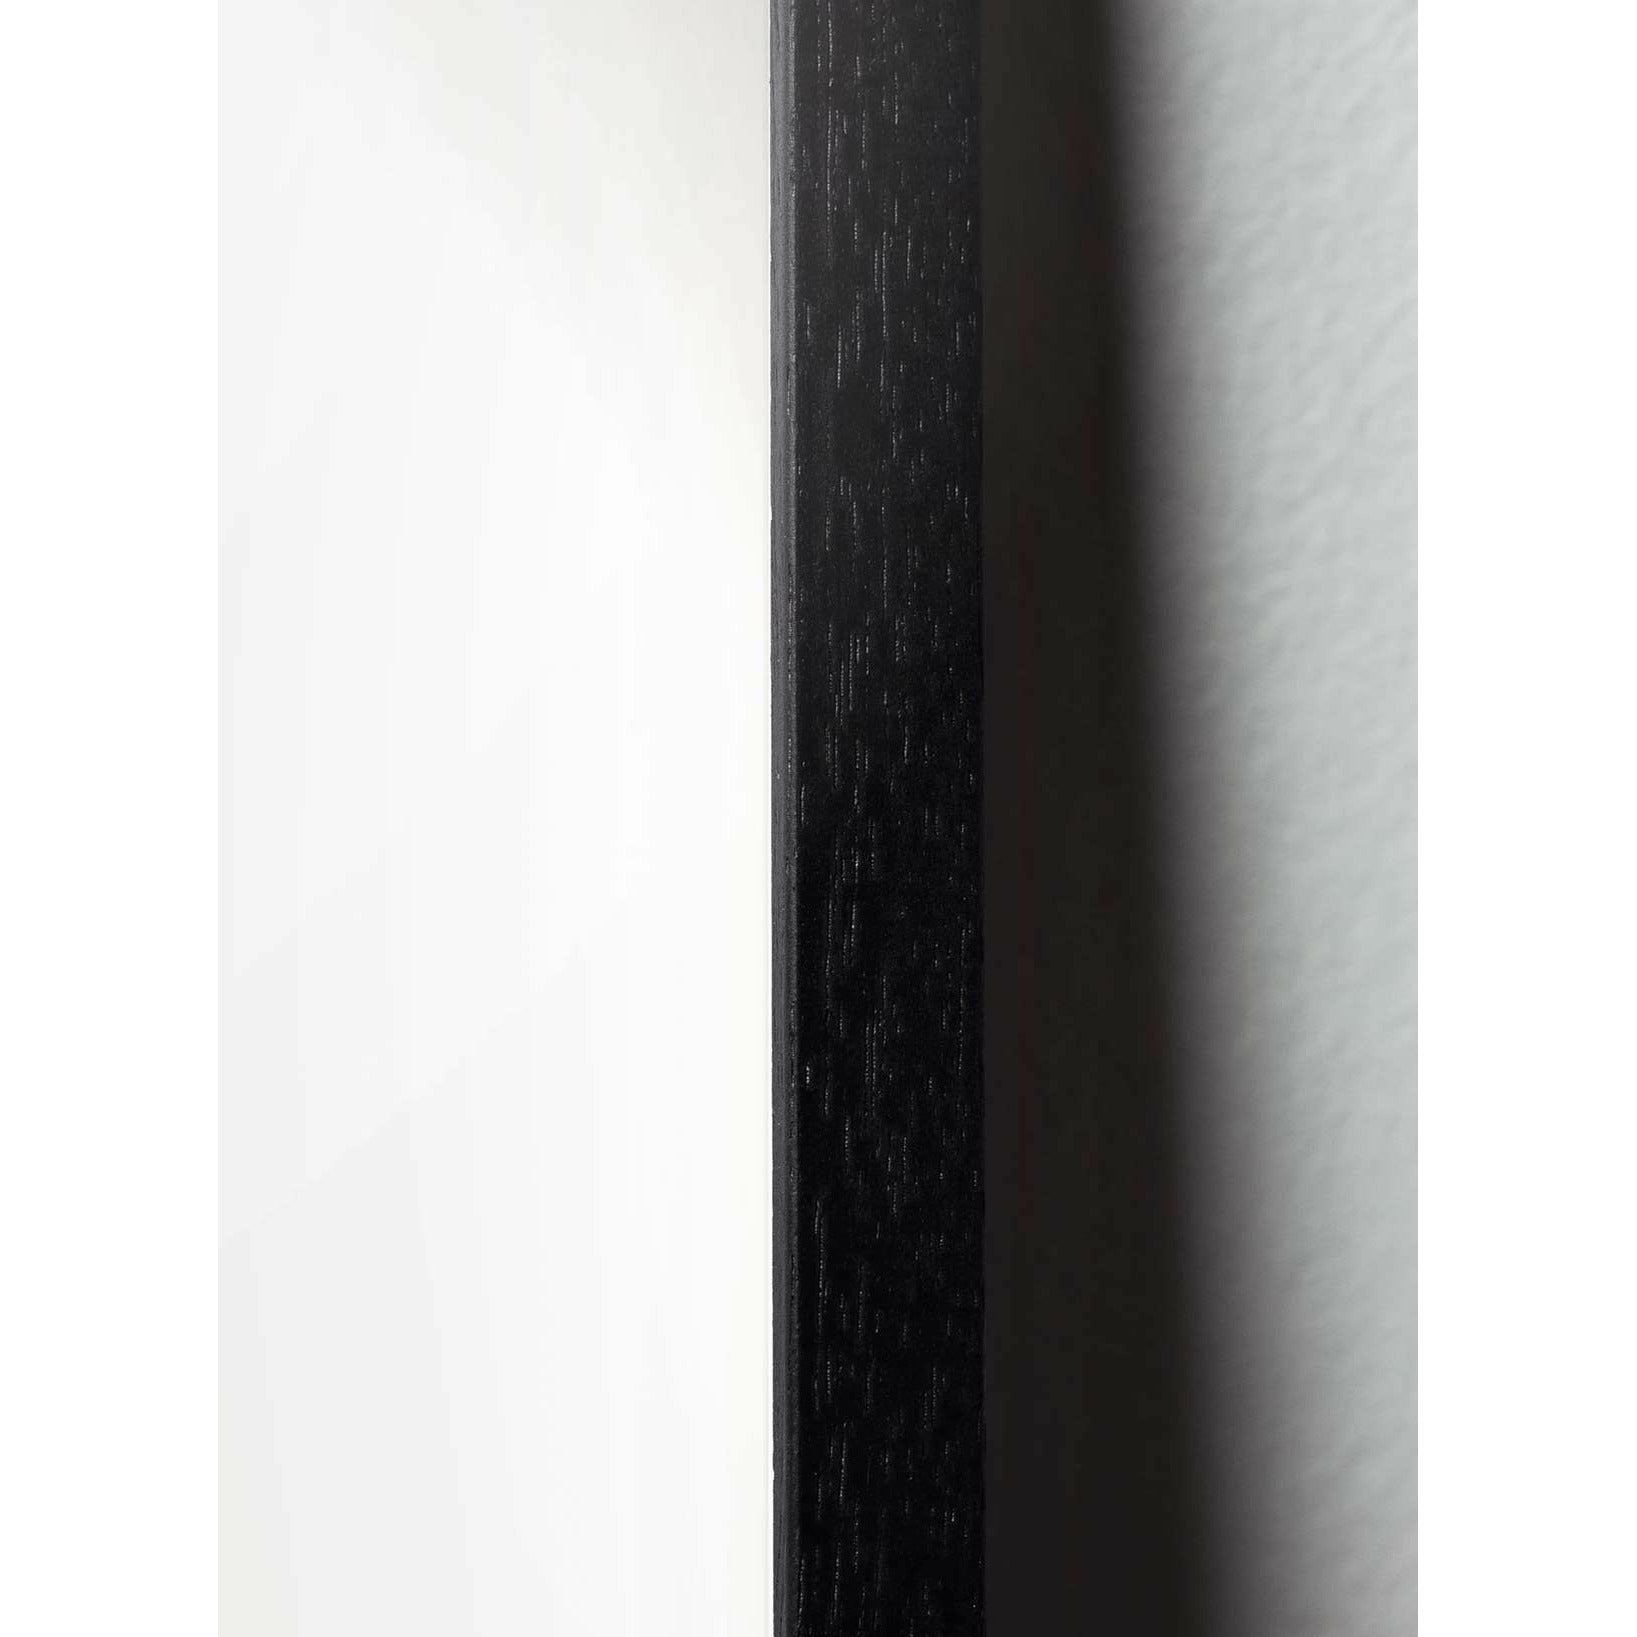 Brainchild Äggfigursaffisch, ram i svart -målat trä A5, svart